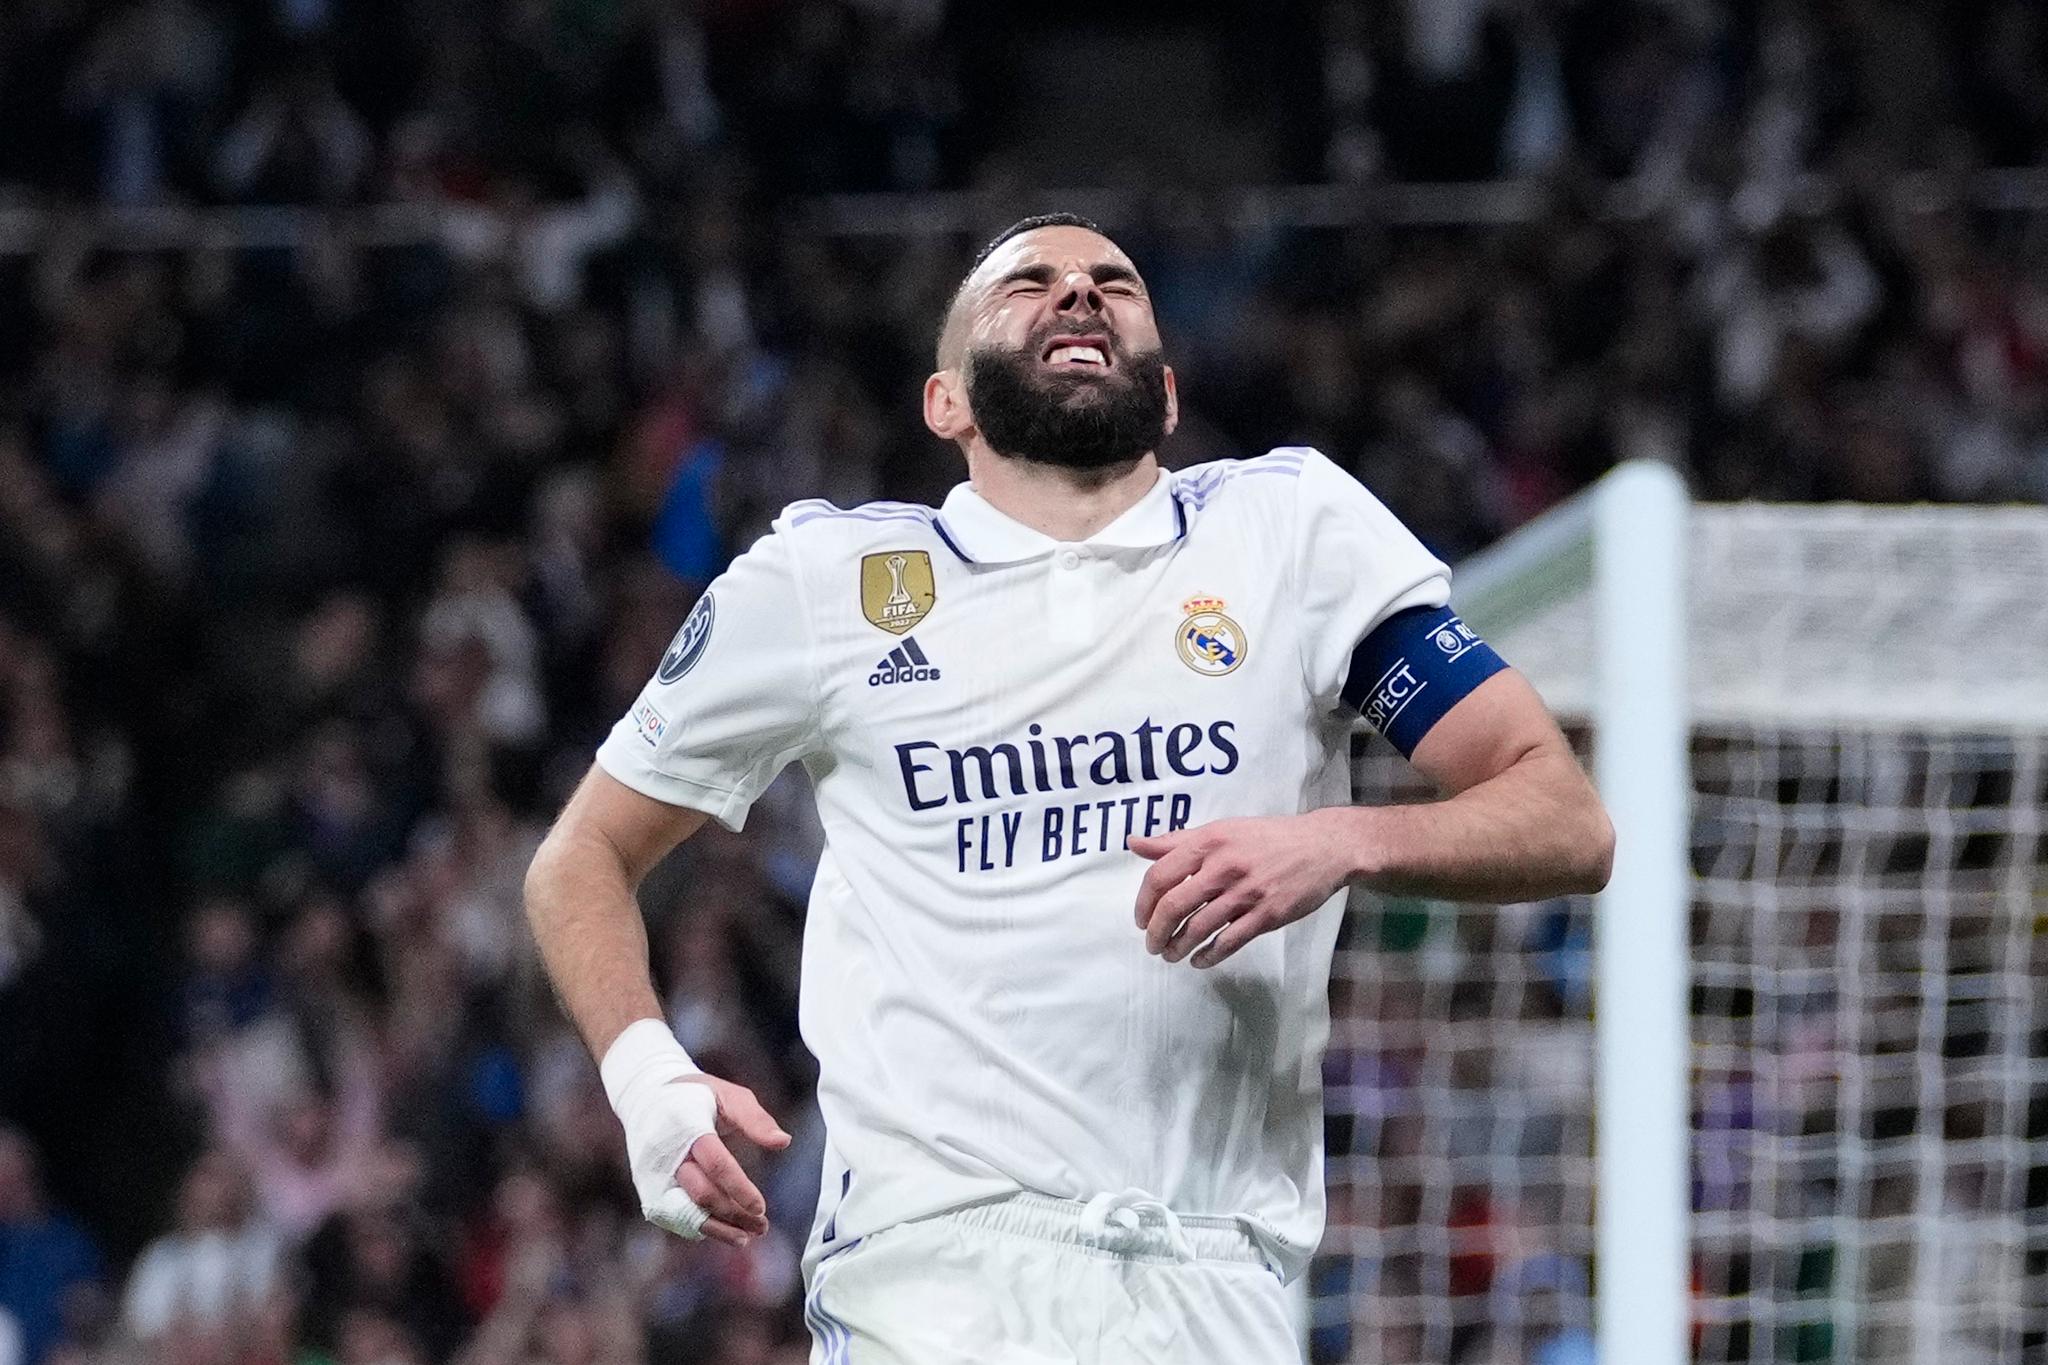 MÅLSCORER: Karim Benzema skadet seg samtidig som han scoret for Real Madrid. Det tok ikke lang tid før franskmannen ble byttet av.